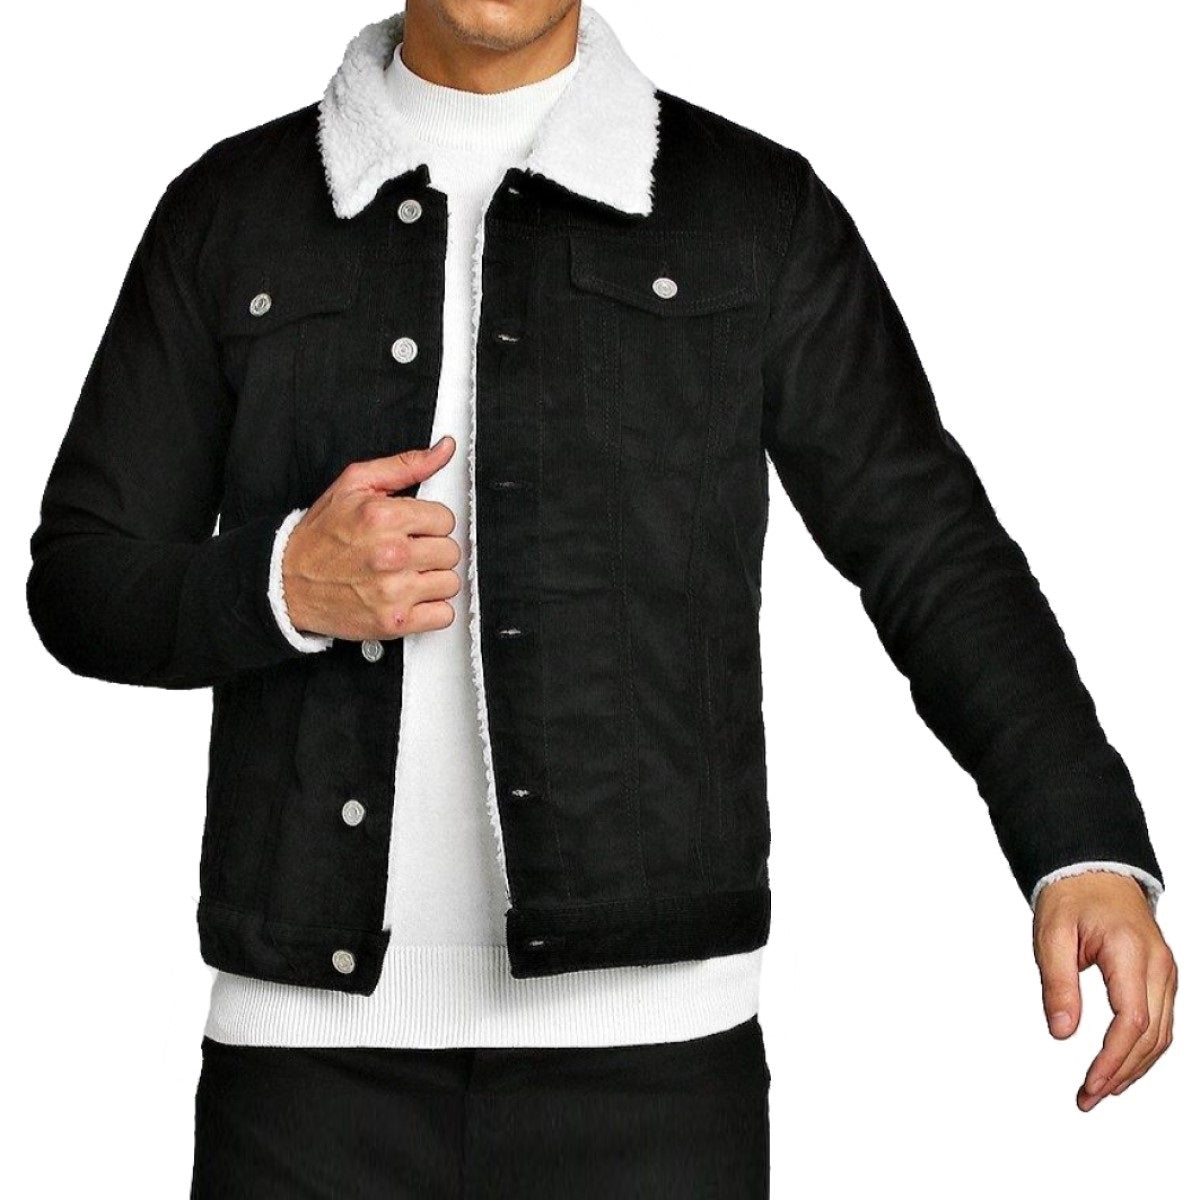 Chamarra para Hombre - TM-CM142262 Jacket for Men